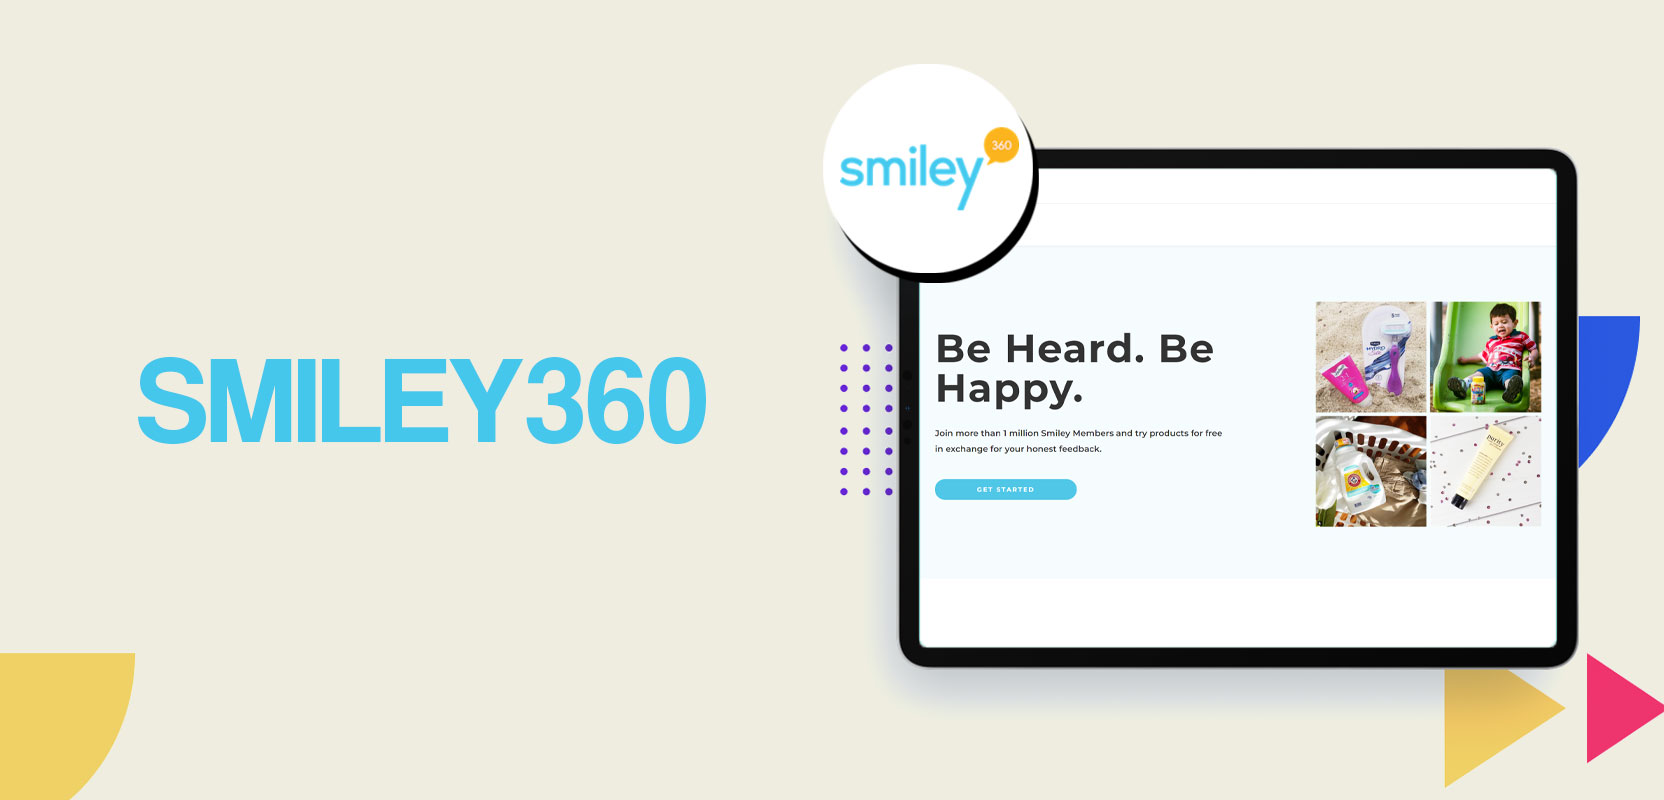 Screen showing Smiley360 website